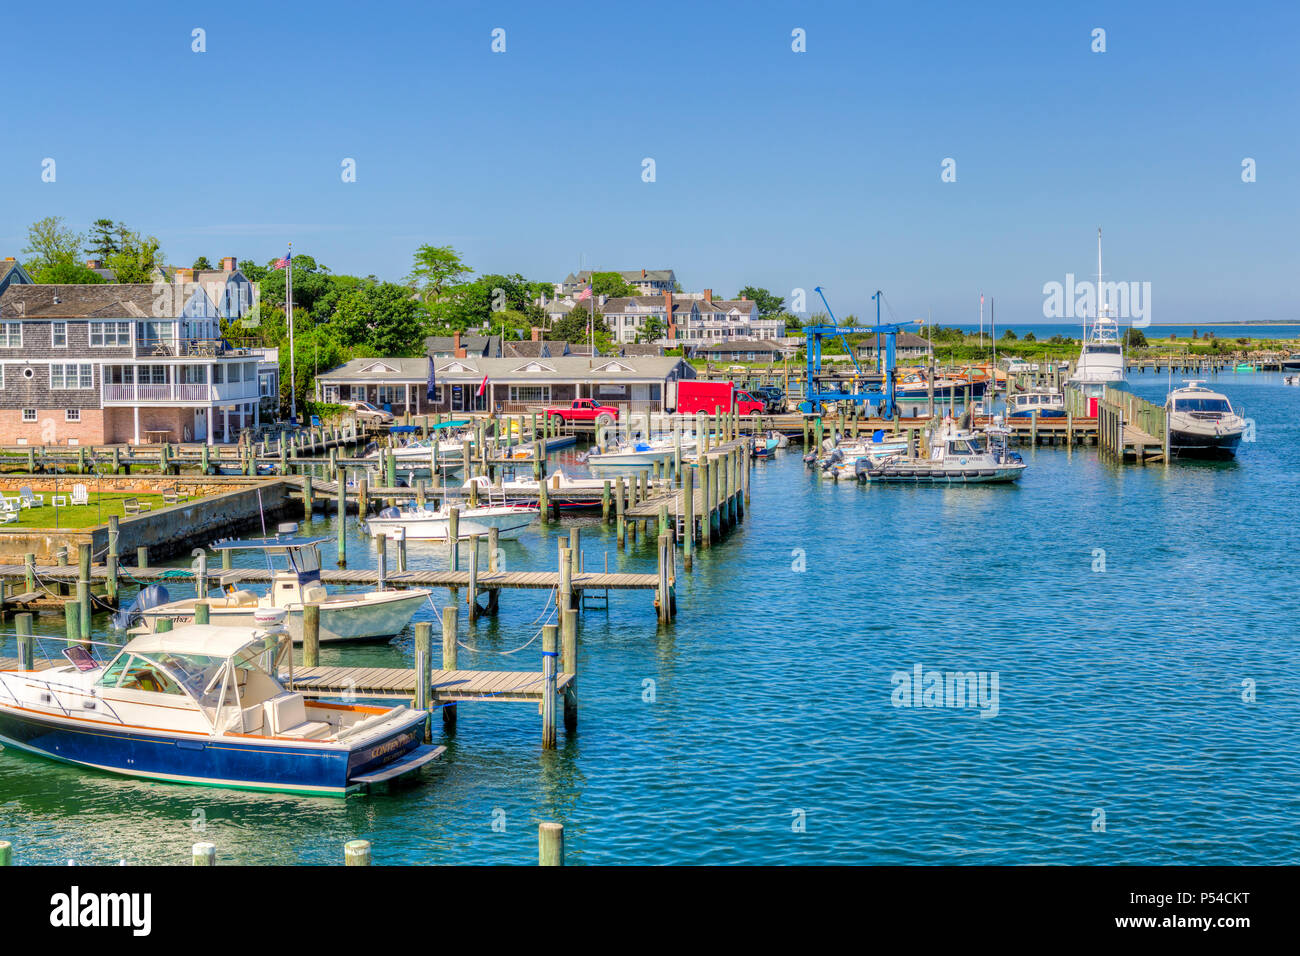 Einen teilweisen Blick auf die Waterfront von Chatham, Massachusetts auf Martha's Vineyard. Stockfoto